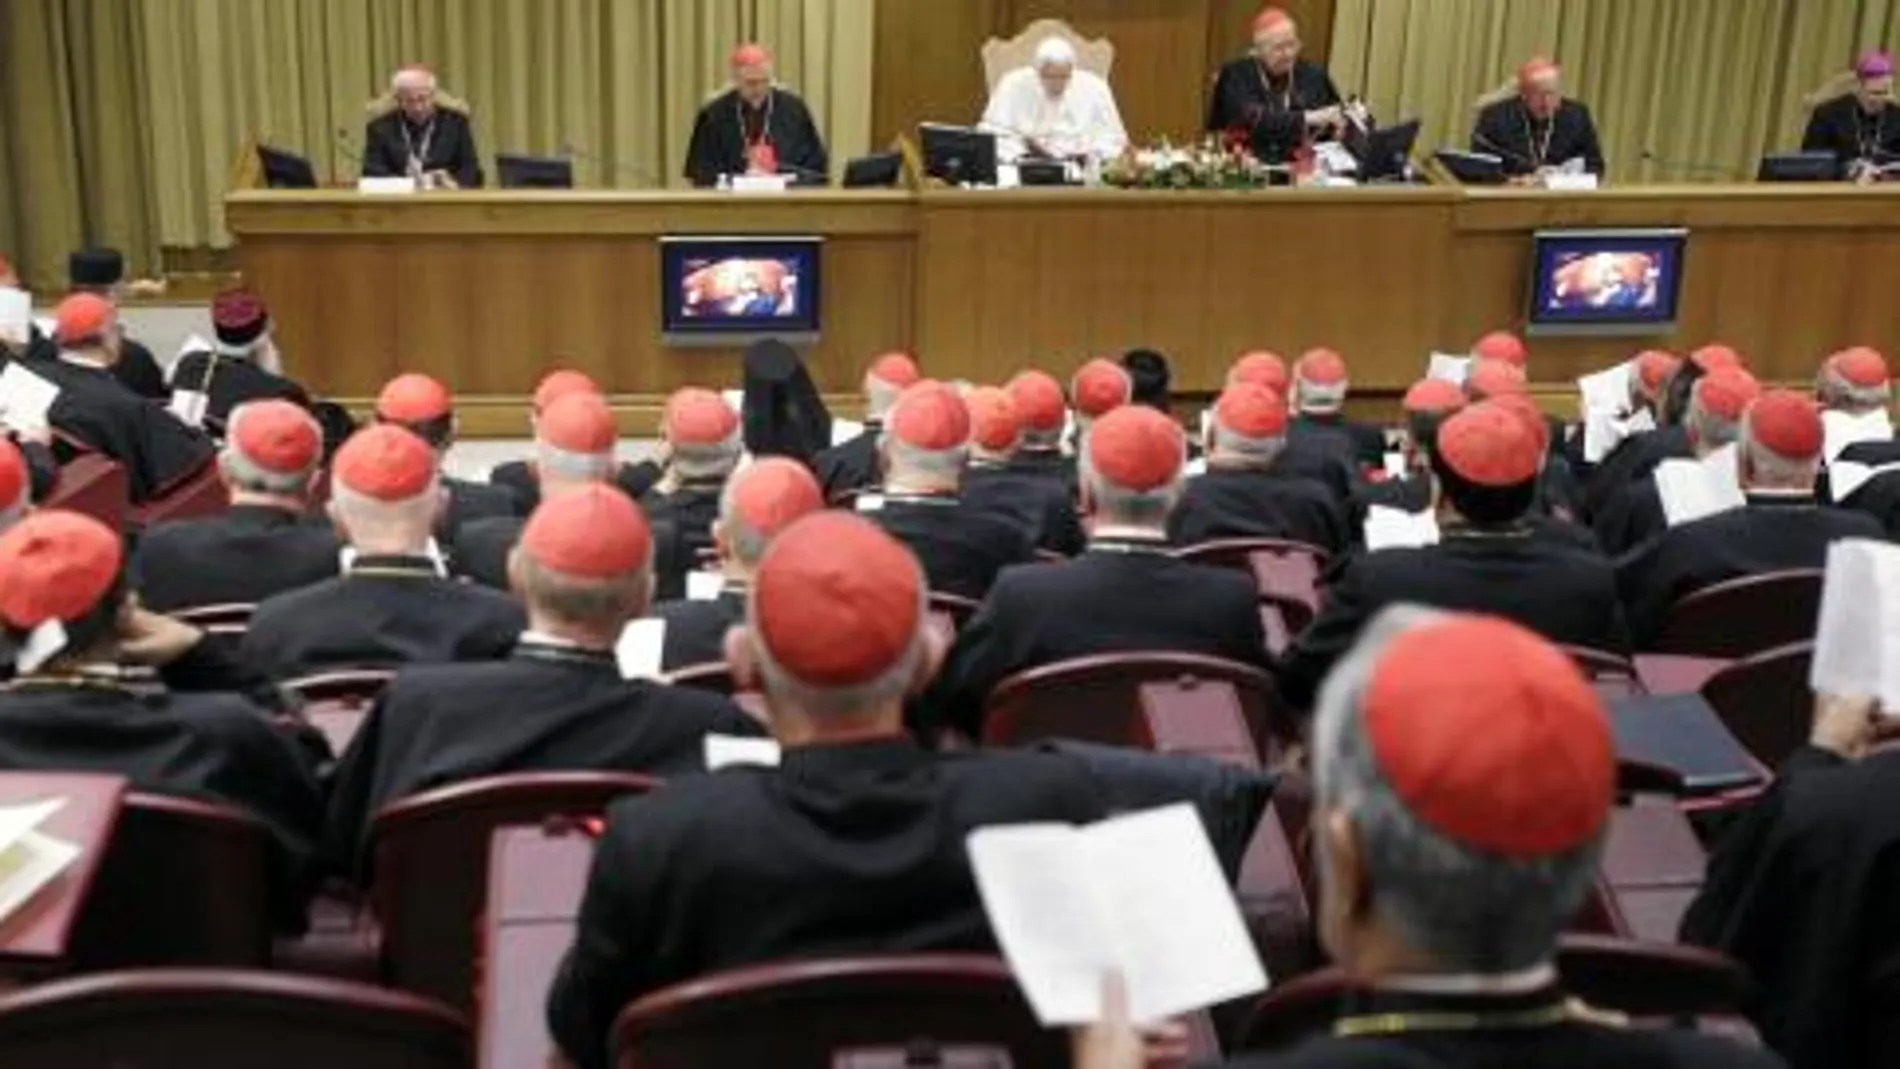 Benedicto XVI ya se reunió el pasado 19 de diciembre con todos los cardenales para señalar las líneas de trabajo futuras en la Iglesia